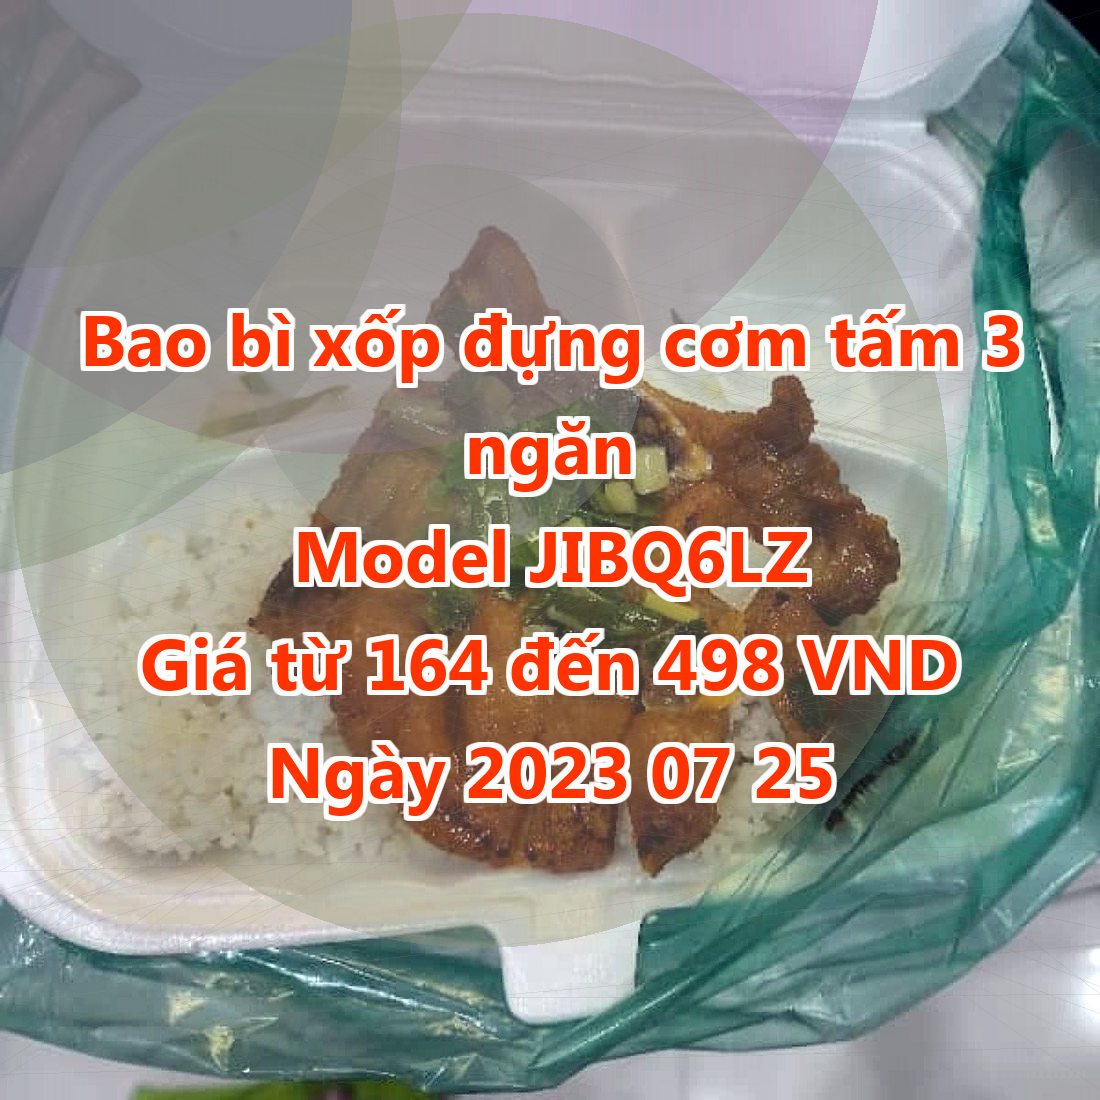 Bao bì xốp đựng cơm tấm 3 ngăn - Model JIBQ6LZ